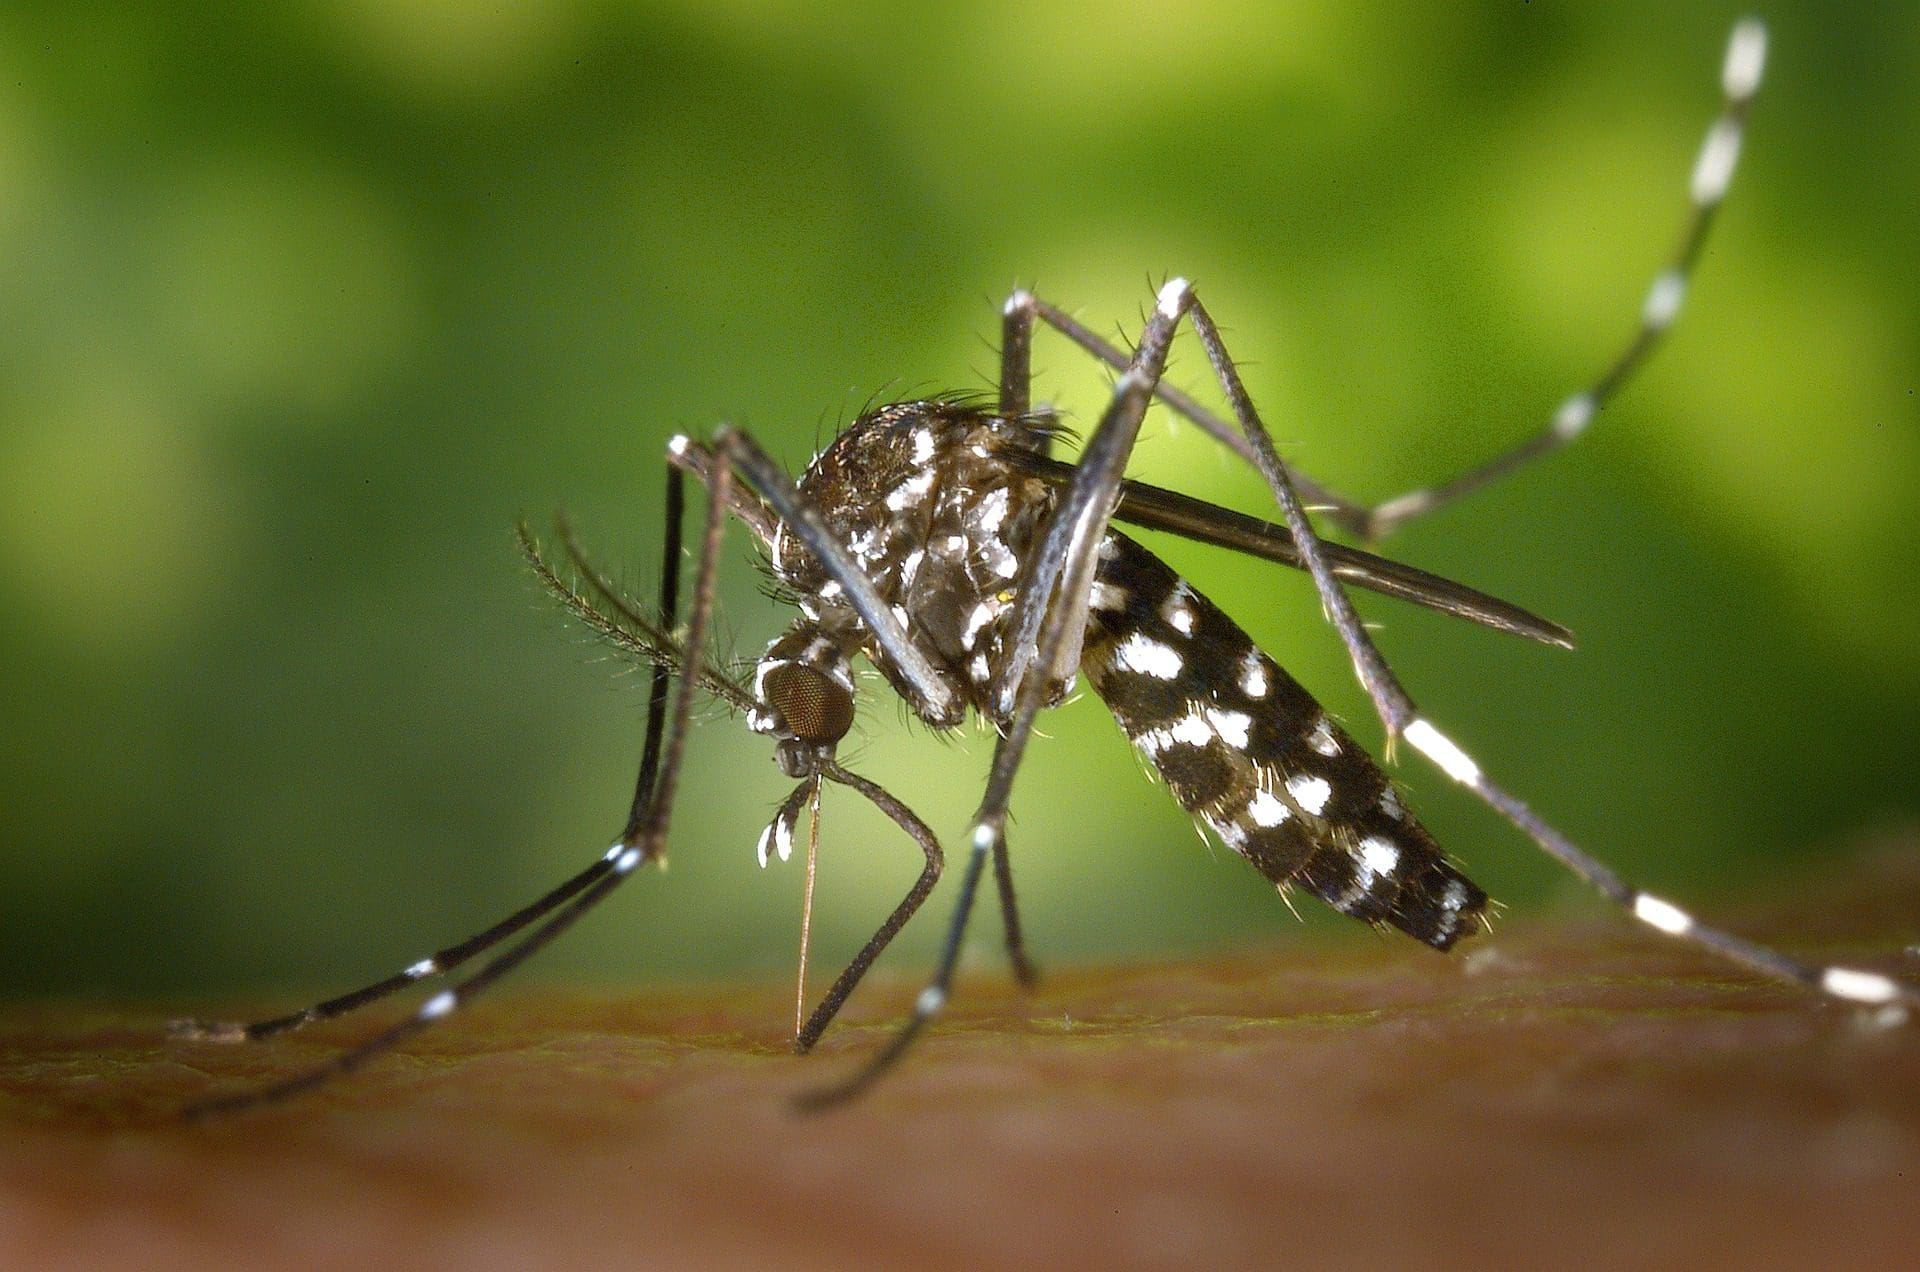 malaria-faelle-nach-dem-aussetzen-von-millionen-moskitos-durch-gates-finanziertes-unternehmen-mrna-impfstoffe-in-vorbereitung